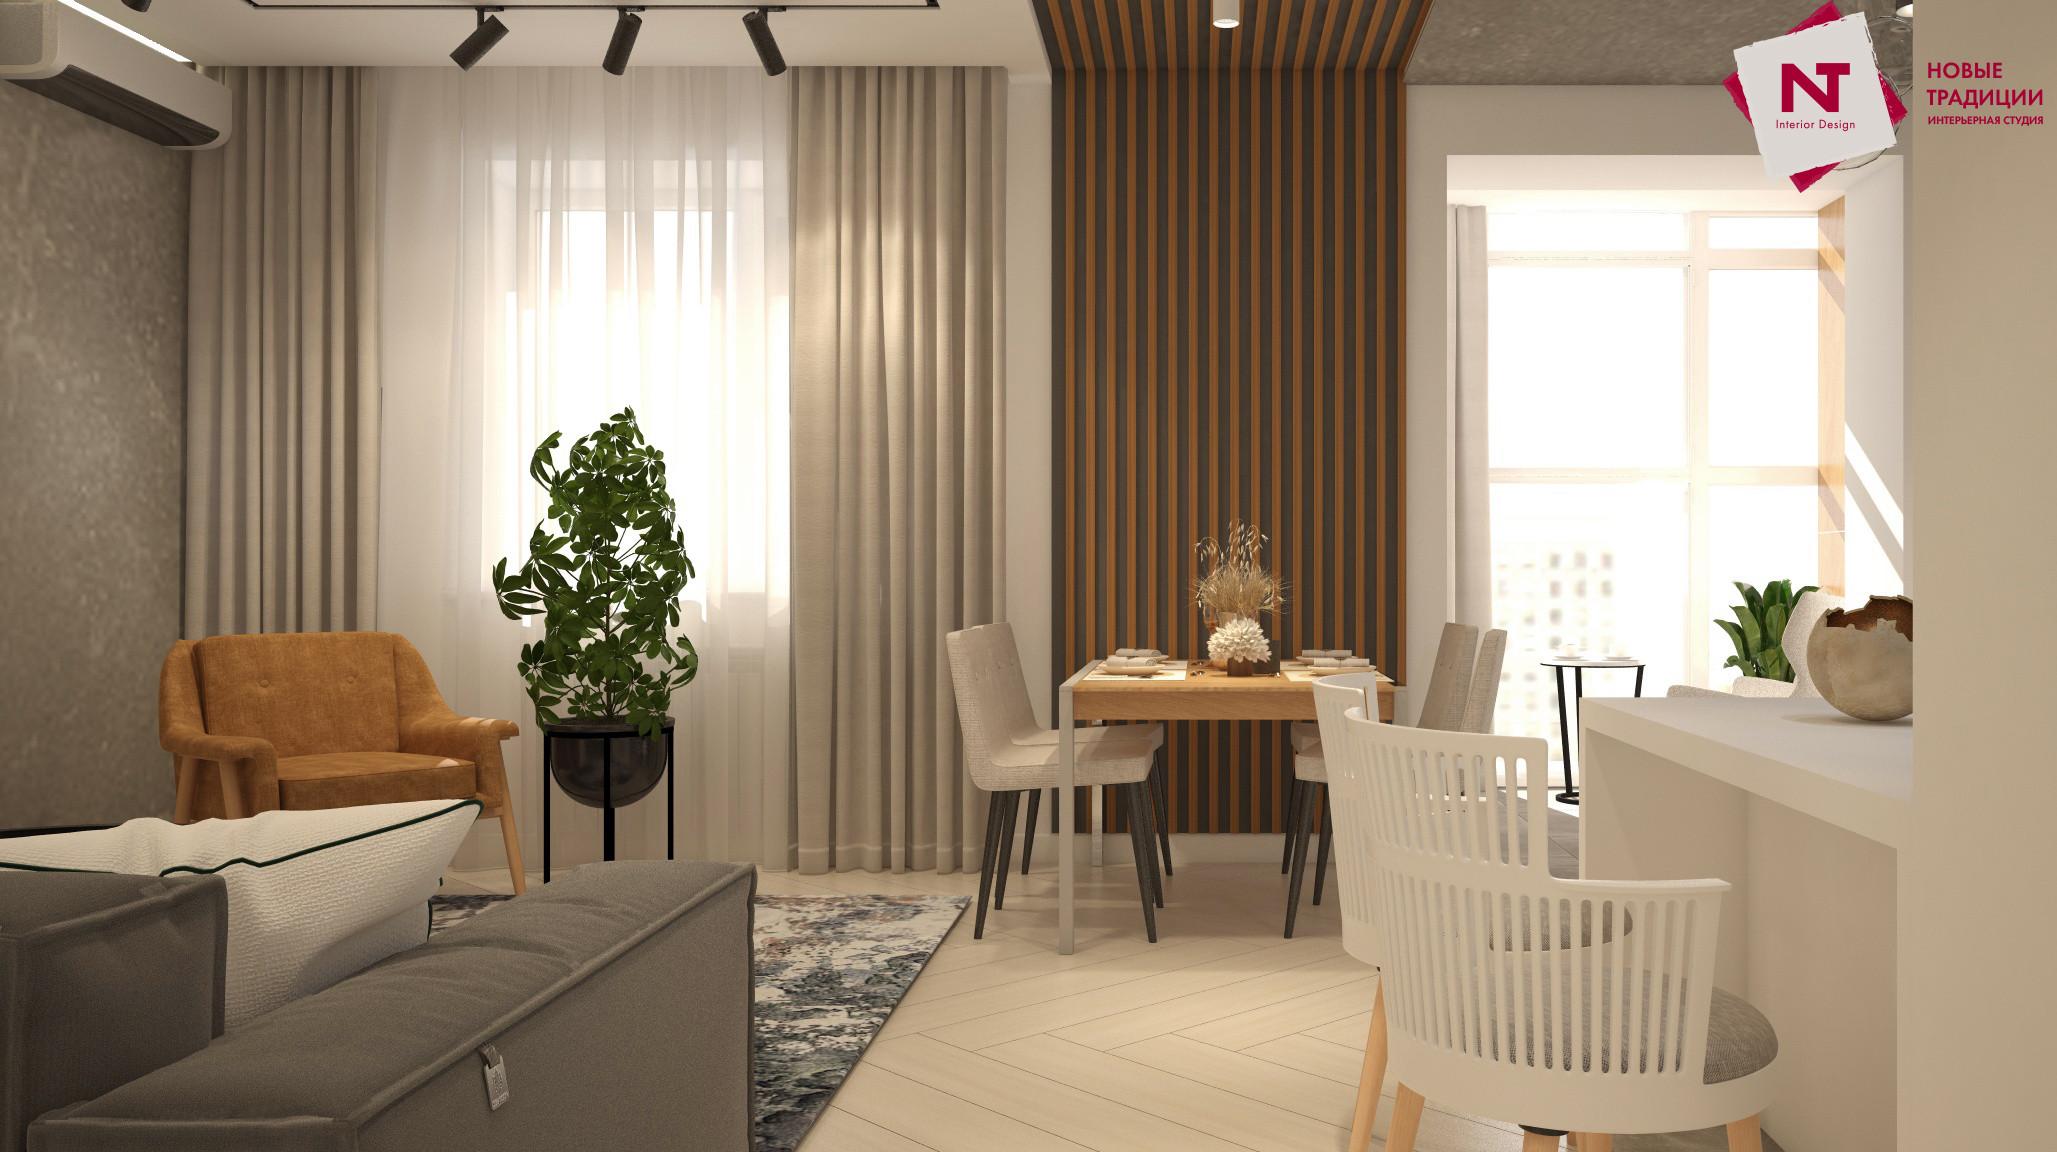 Интерьер гостиной с зонированием рейками, телевизором на рейках, переговорной и вертикальными жалюзи в современном стиле